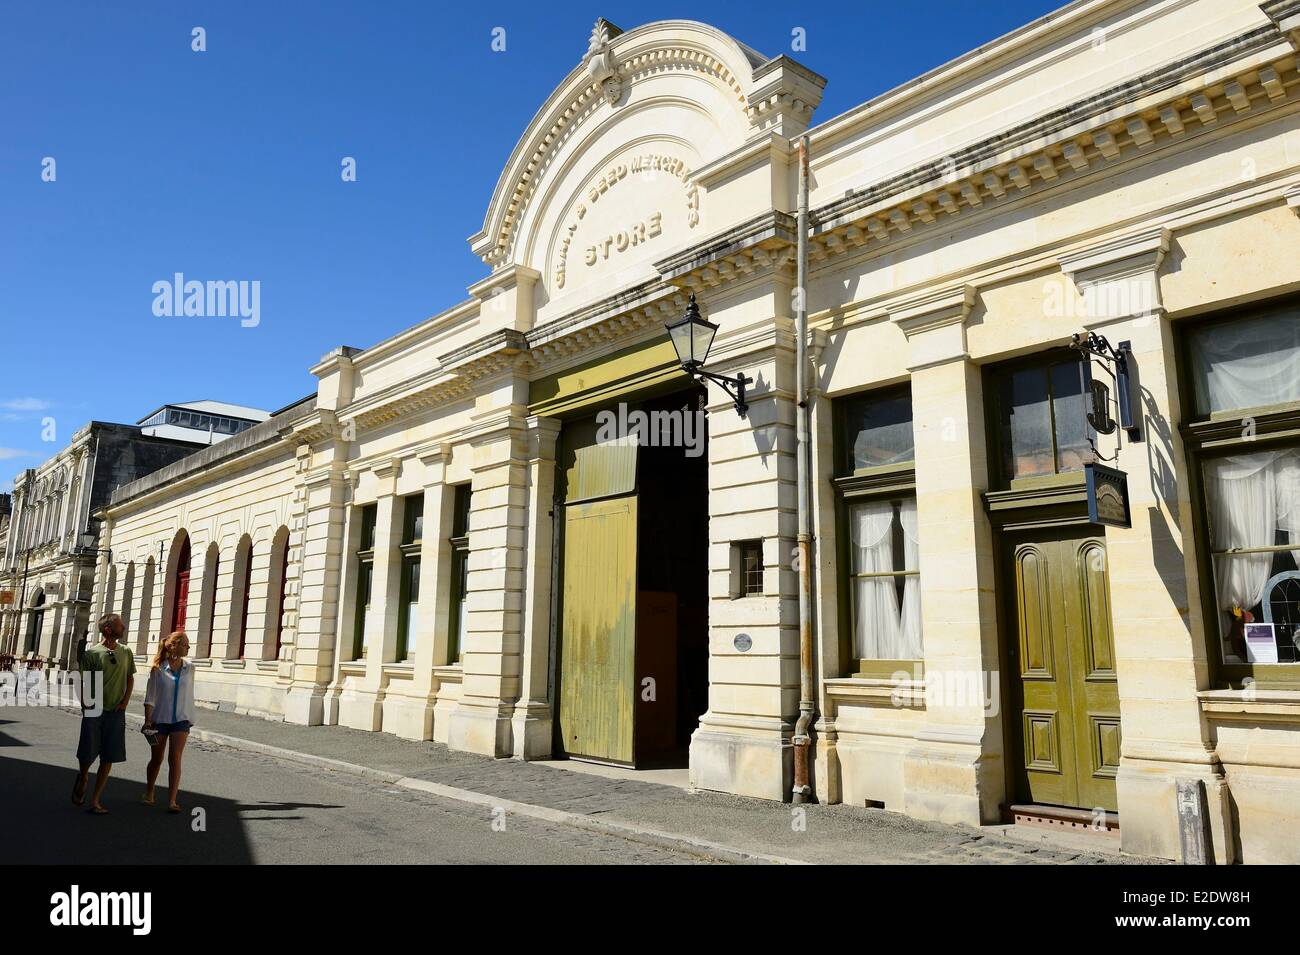 Nouvelle Zélande, île du Sud, région de l'Otago, Oamaru est un centre urbain sur le front de mer avec bon état de bâtiments victoriens datant des années 1880, rue du Port rue est bordée d'entrepôts, granges et bâtiments commerciaux Banque D'Images